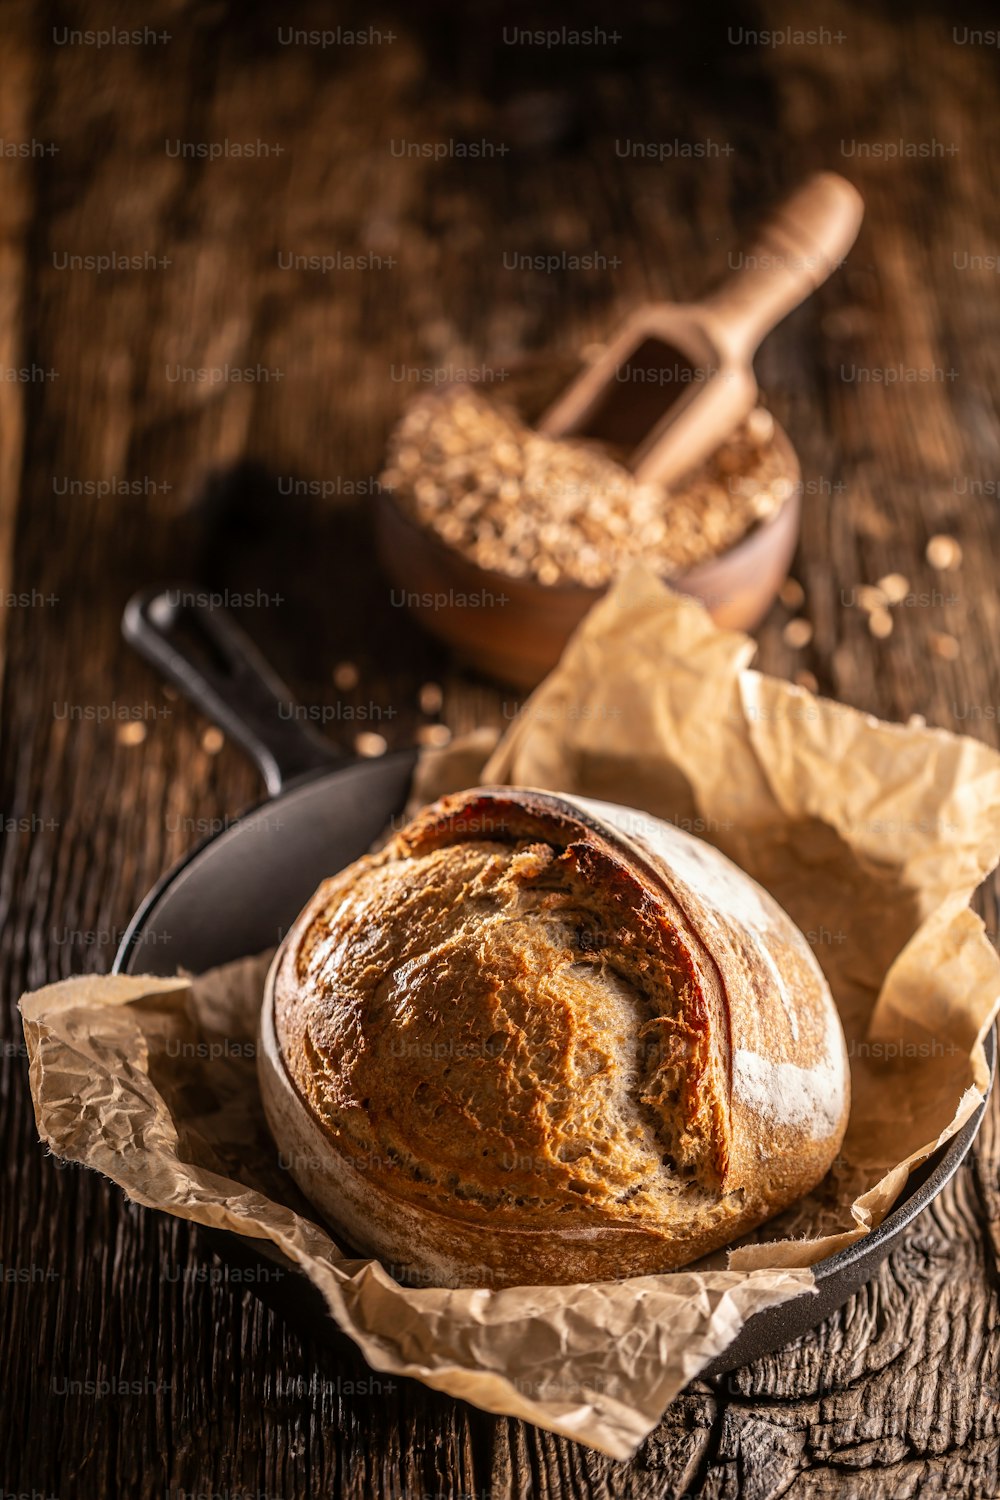 Pão de fermento rústico crocante recém-assado deitado no papel de cozimento na tigela de madeira da panela de liga cheia de grãos de trigo colher de madeira costurada profundamente nele.